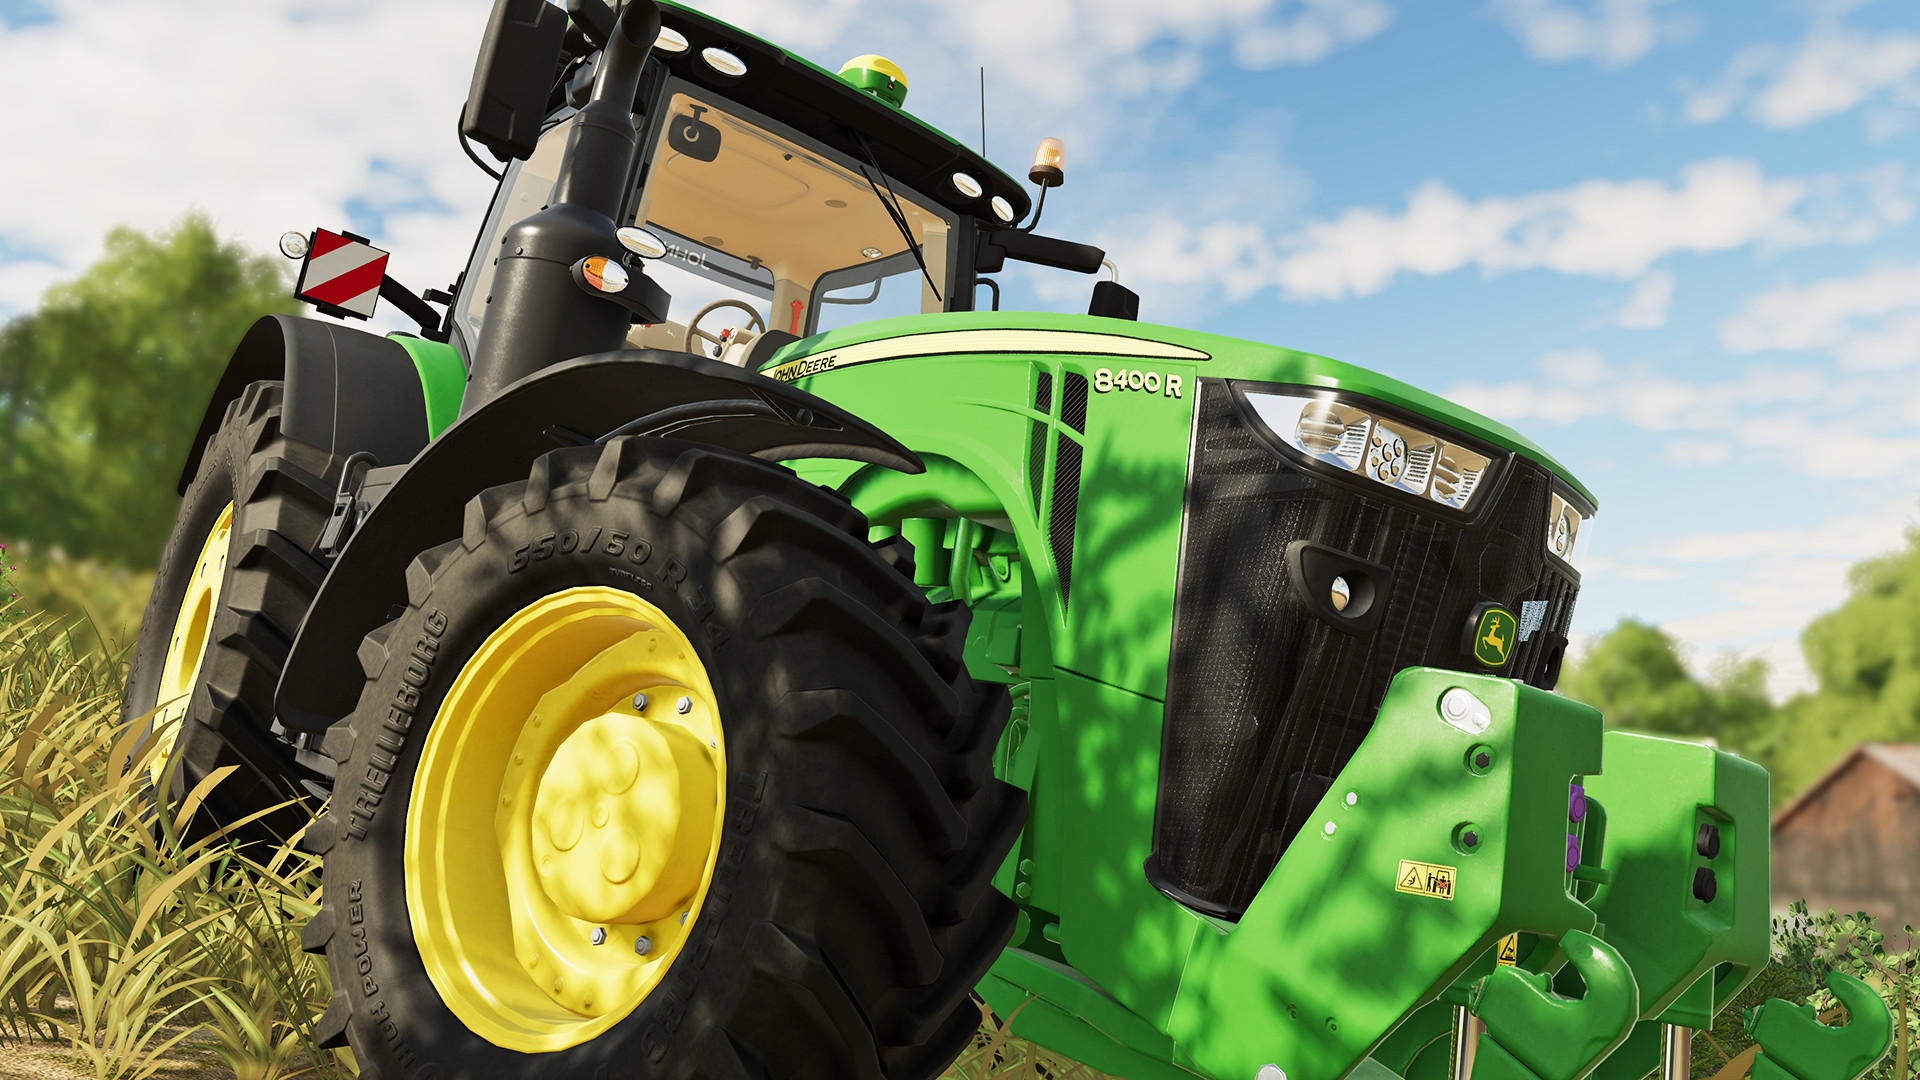 SAIU! Nova Atualização do Farming Simulator 20 com Novo Trator e  Colheitadeira da John Deere e Mais! 